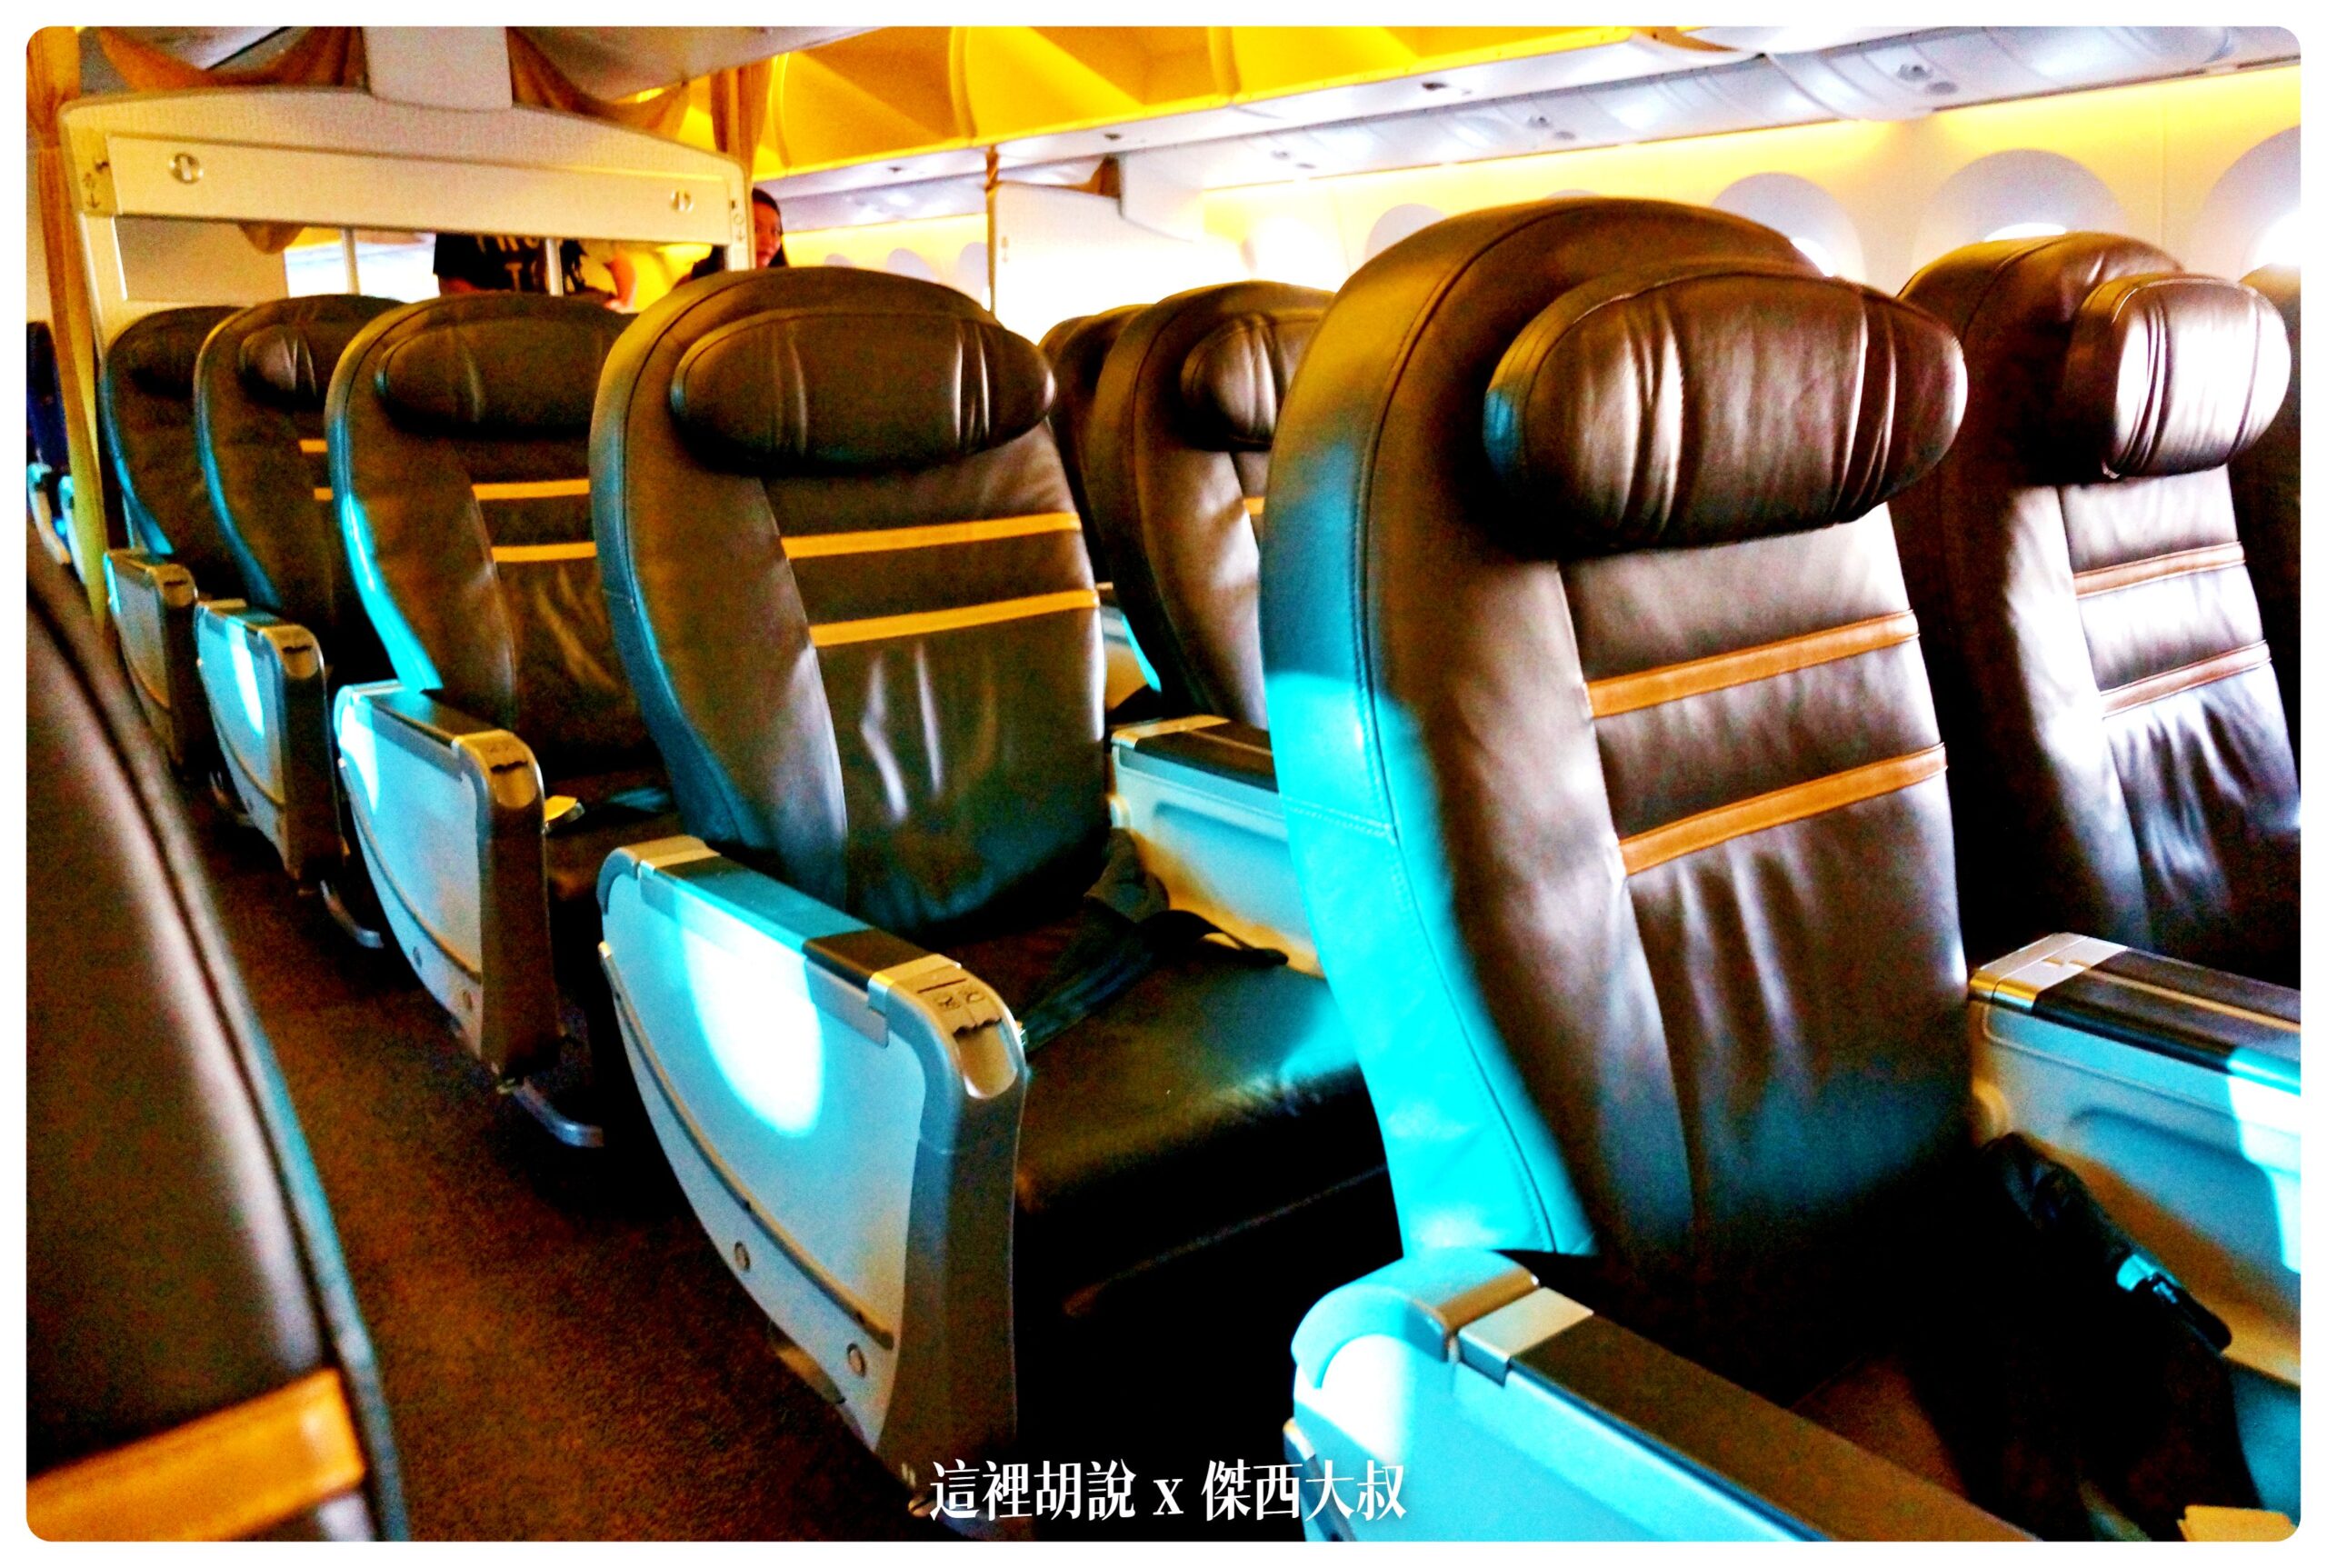 酷航 787–9 商務艙 無線上網服務 以及自助機上娛樂系統開箱